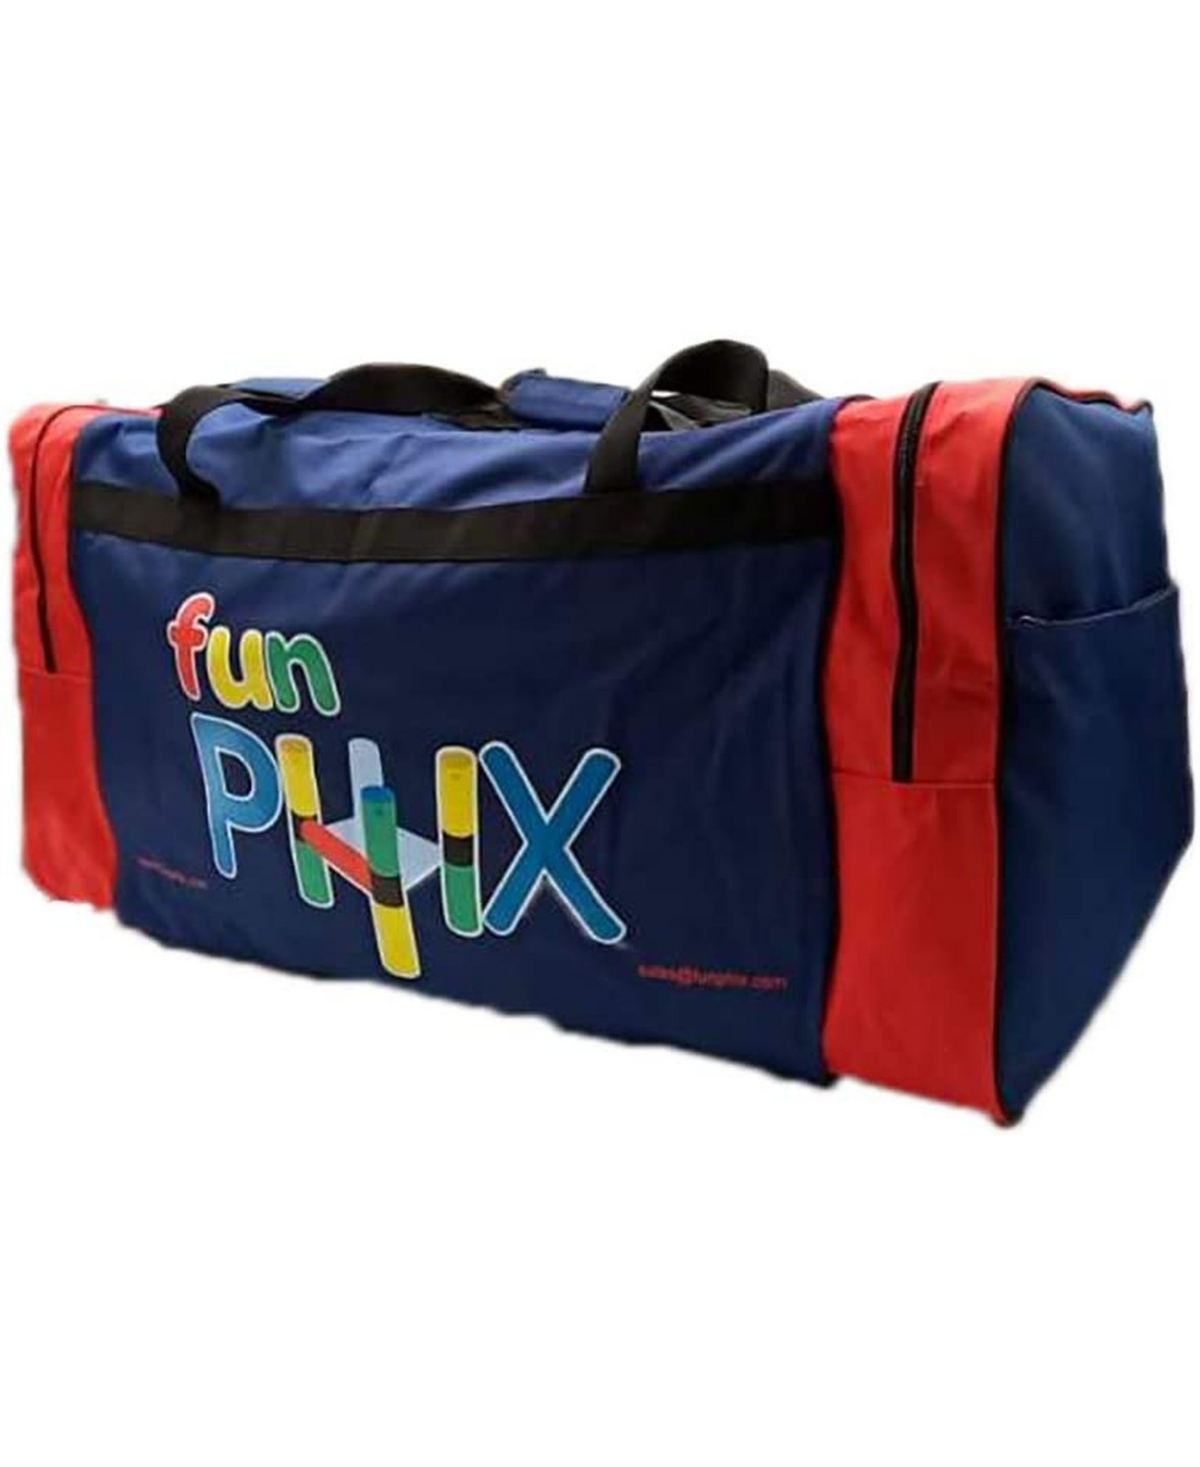 Funphix Store-it Suitcase In Blue